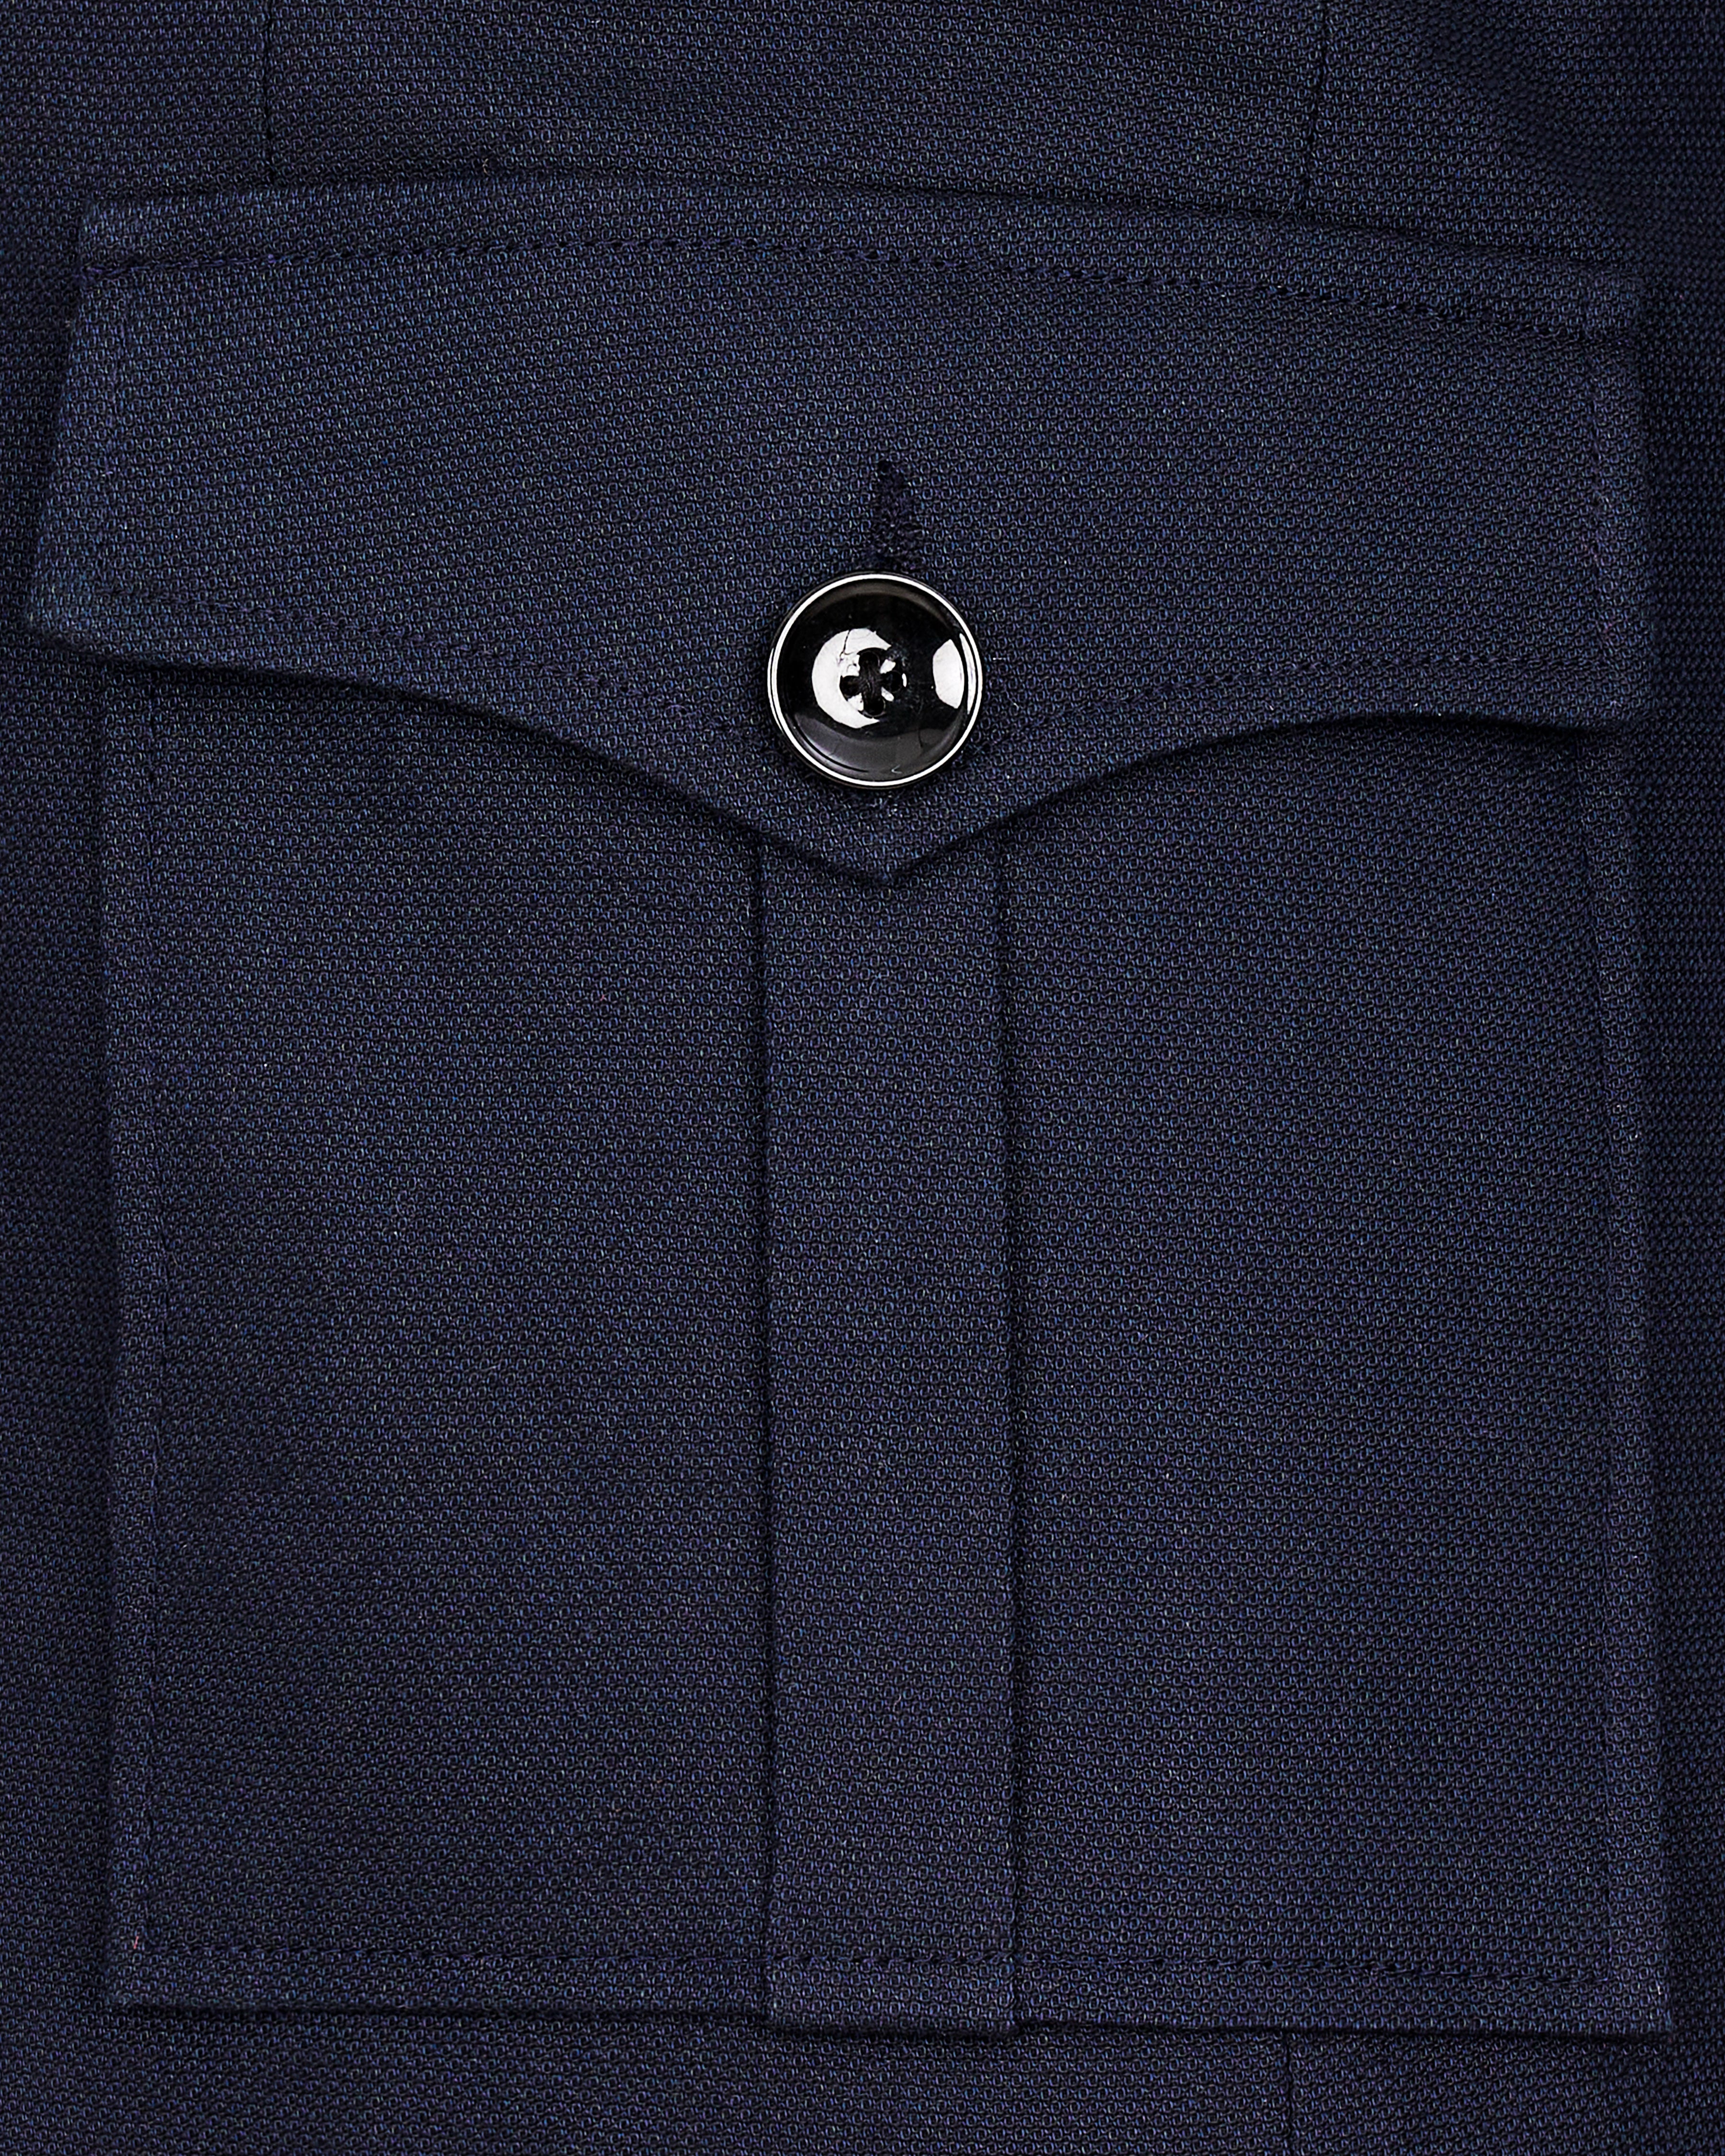 Thunder Navy Blue Premium Cotton Designer Blazer with Functional Belt Fastening